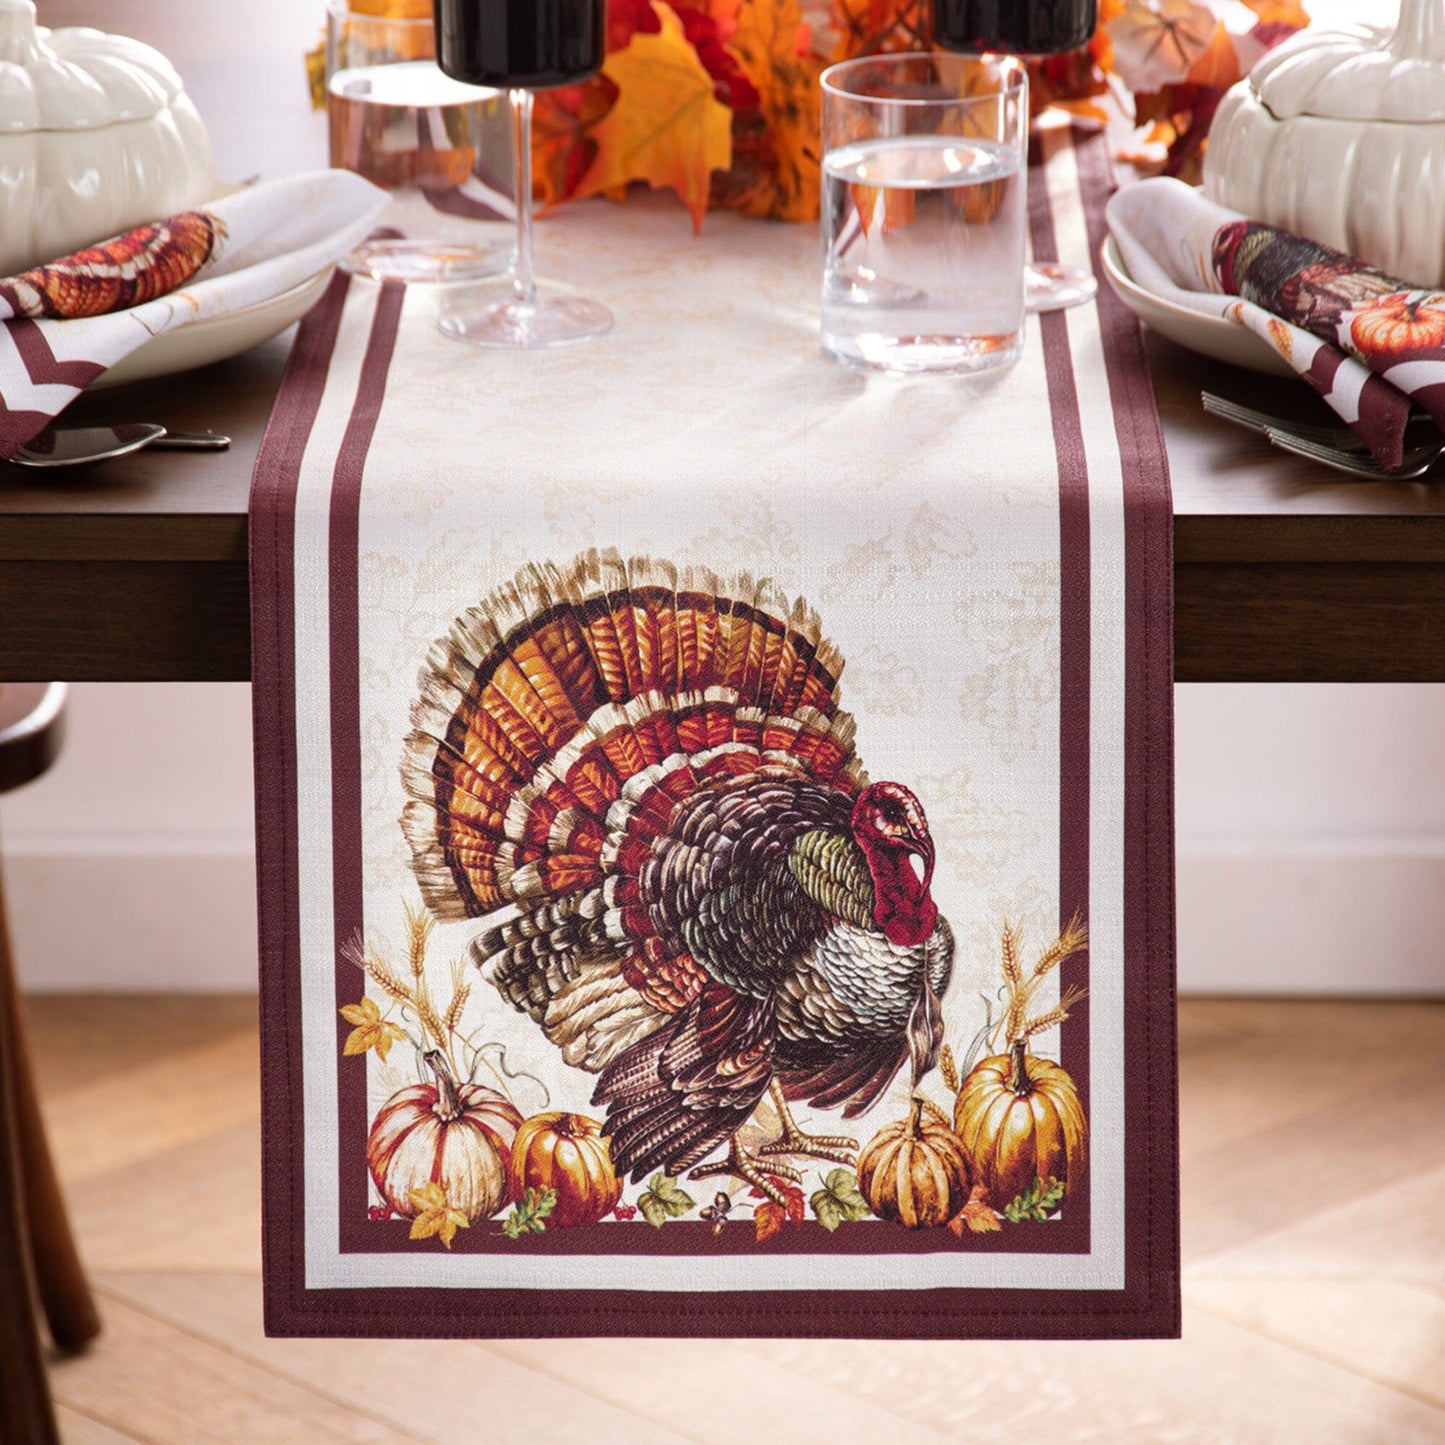 Autumn Heritage Turkey Engineered Table Runner